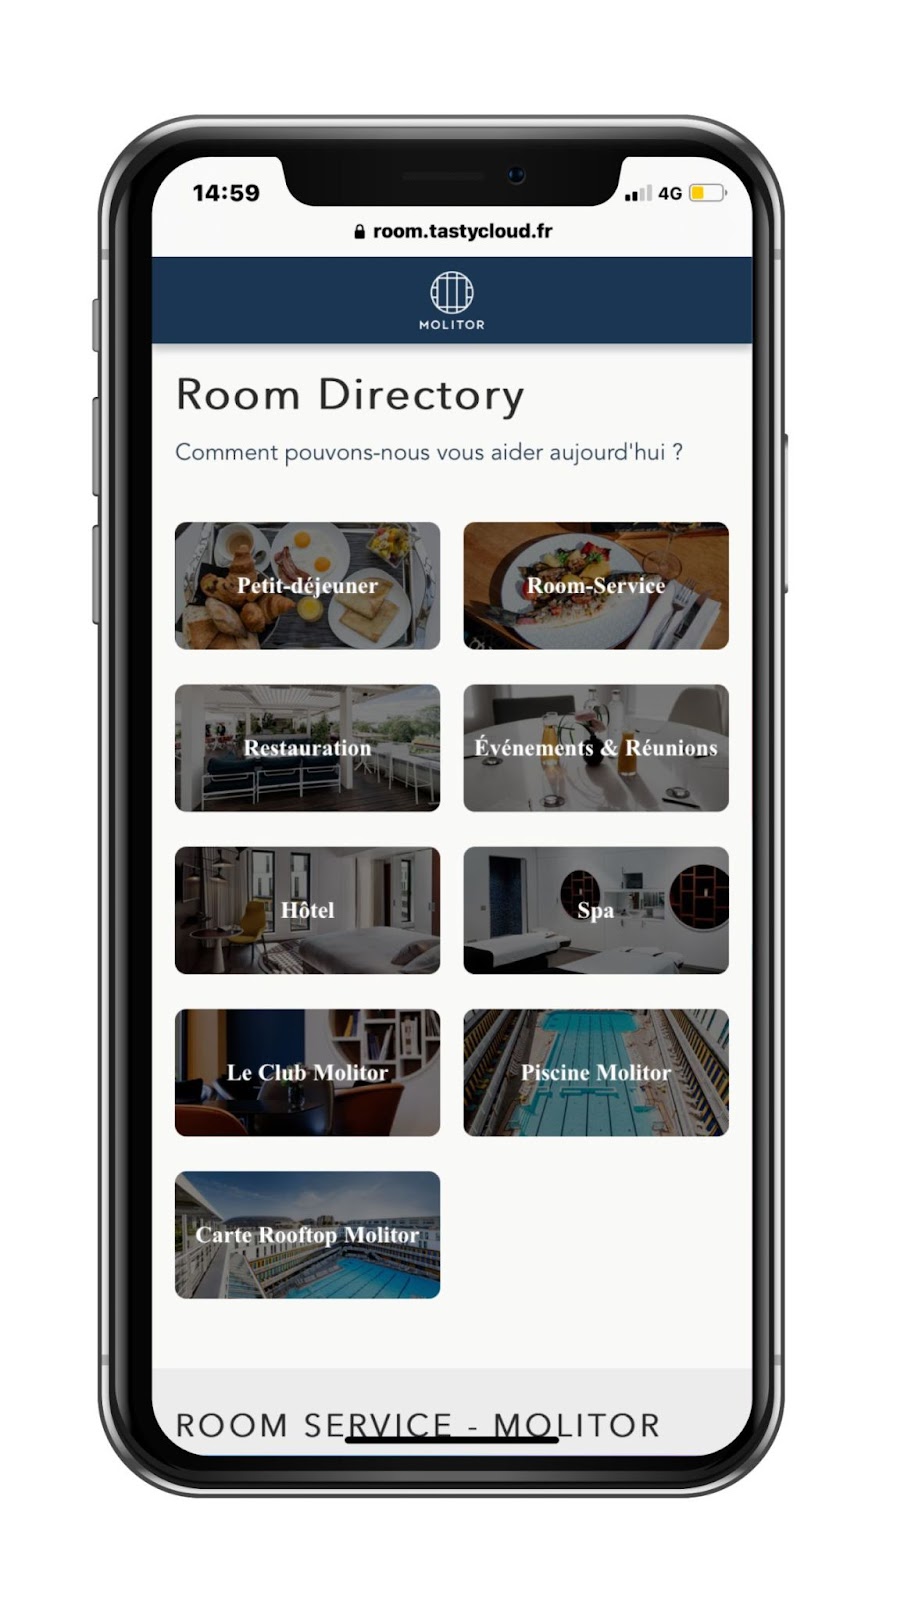 Le Room Directory de TastyCloud permet de développer tous les pôles de revenus de l'hôtel